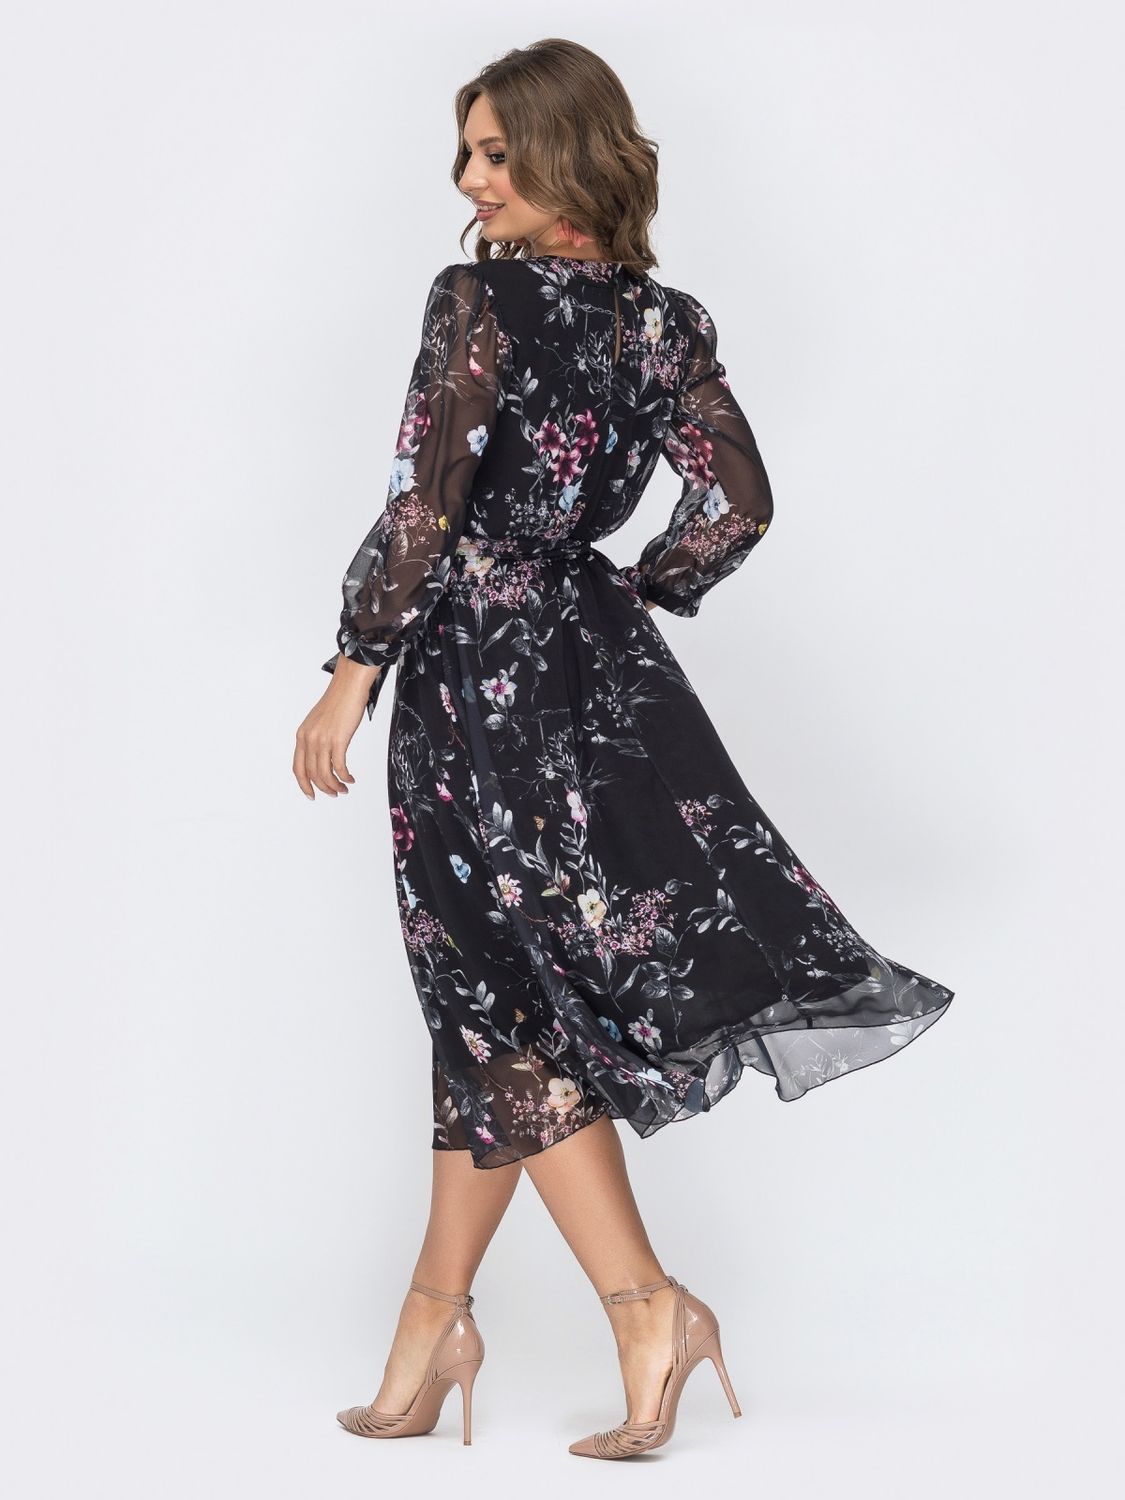 Жіночна шифонова сукня з розкльошеною спідницею - фото